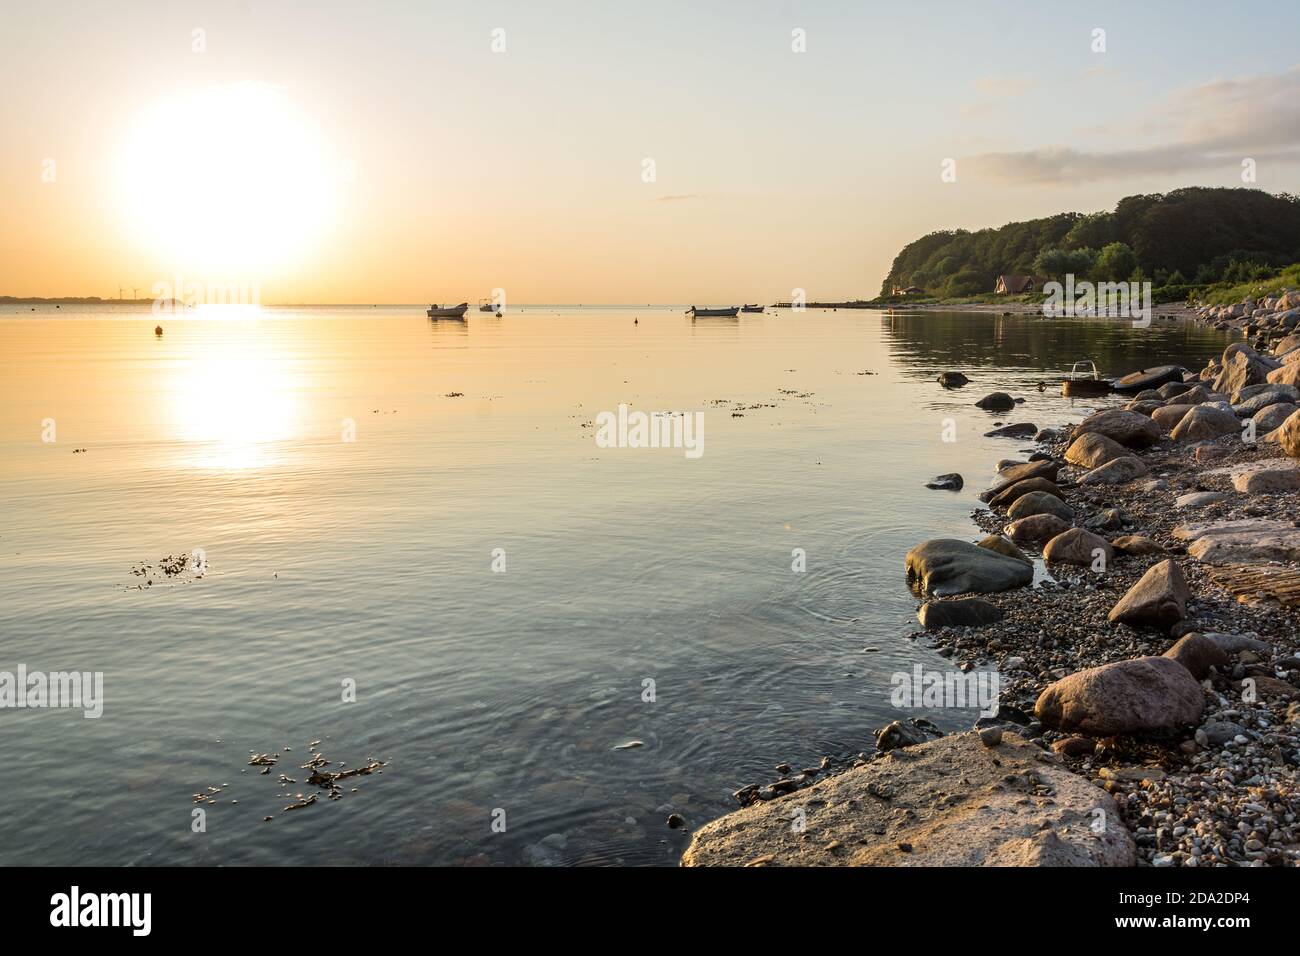 Hermoso amanecer sobre la tranquila bahía en el Mar Báltico con pequeños barcos y costa rocosa Foto de stock